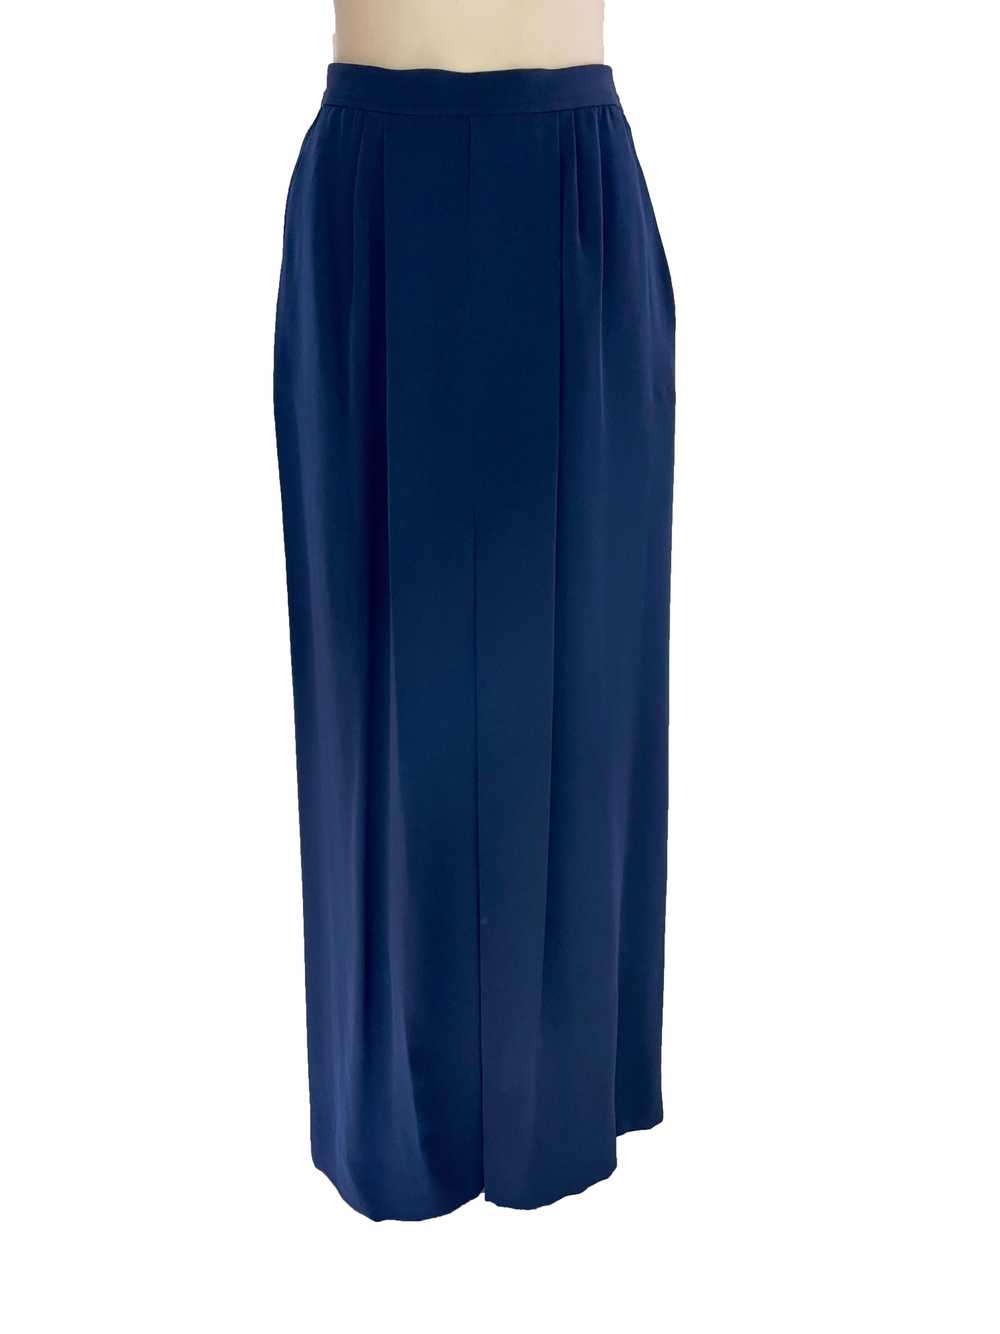 1990s Yves Saint Laurent Deadstock Skirt Suit - image 3